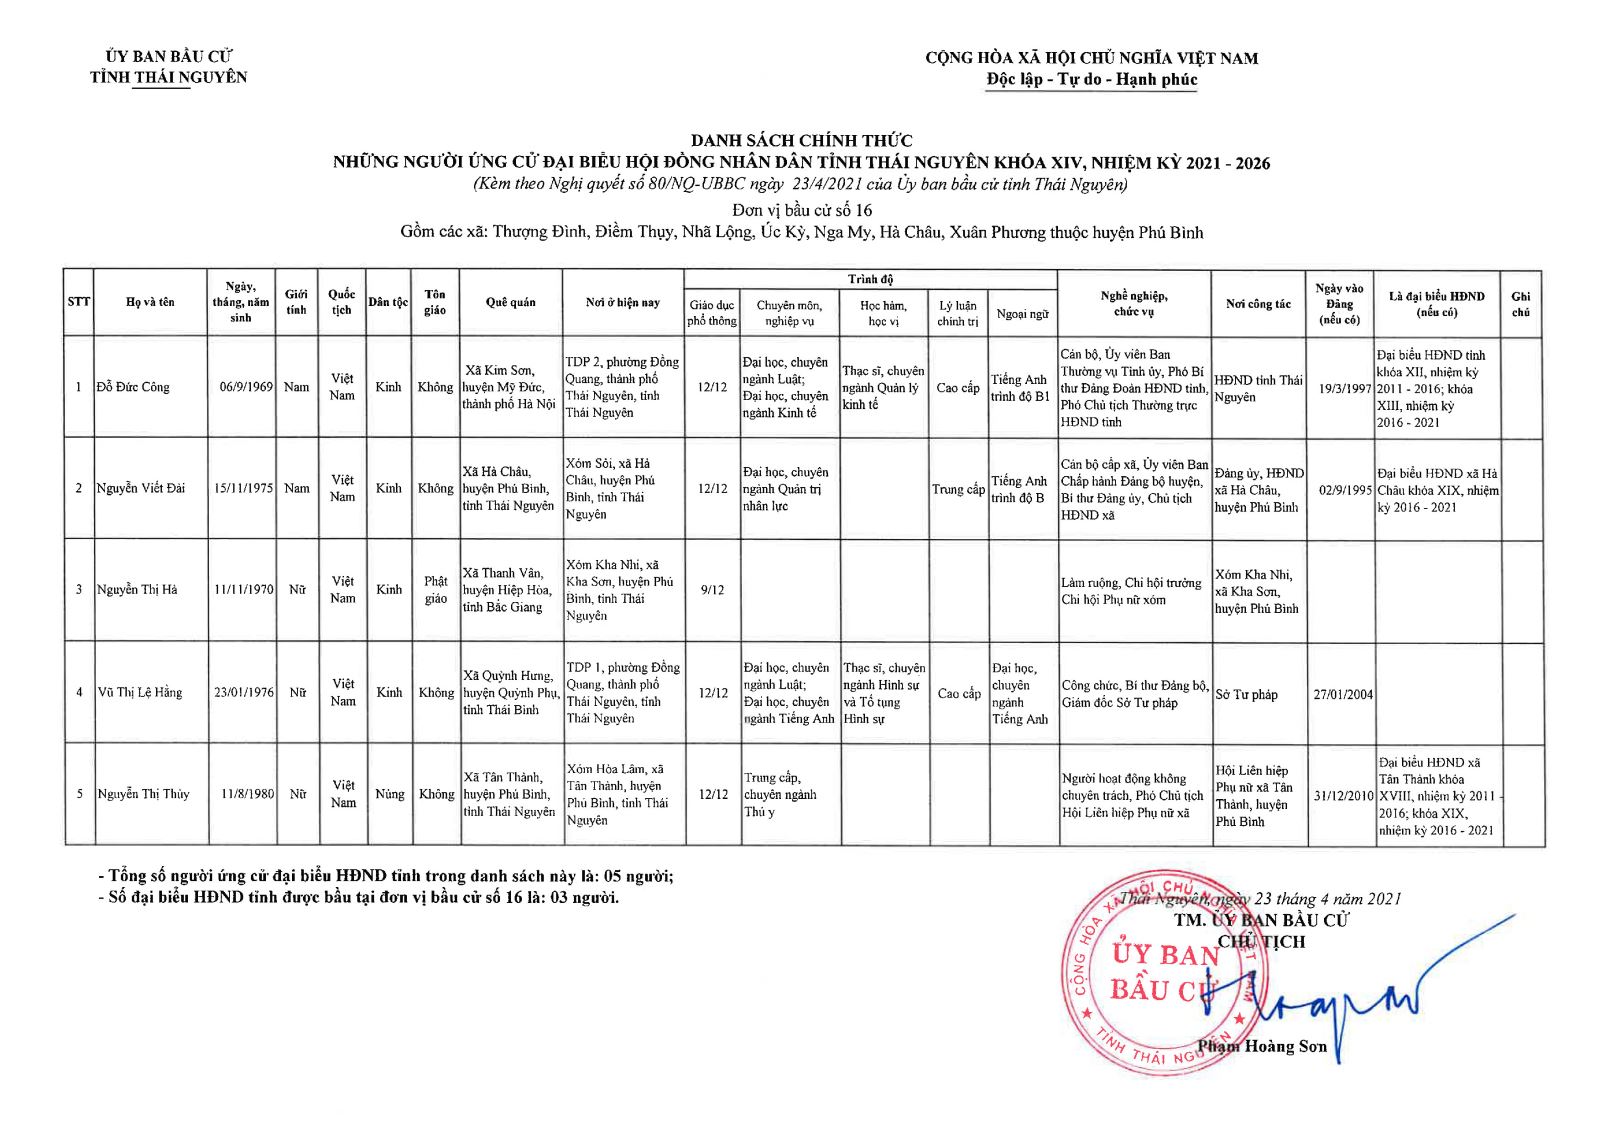 Danh sách chính thức những người ứng cử đại biểu Hội đồng nhân dân tỉnh Thái Nguyên khóa XIV, nhiệm kỳ 2021 - 2026 -1